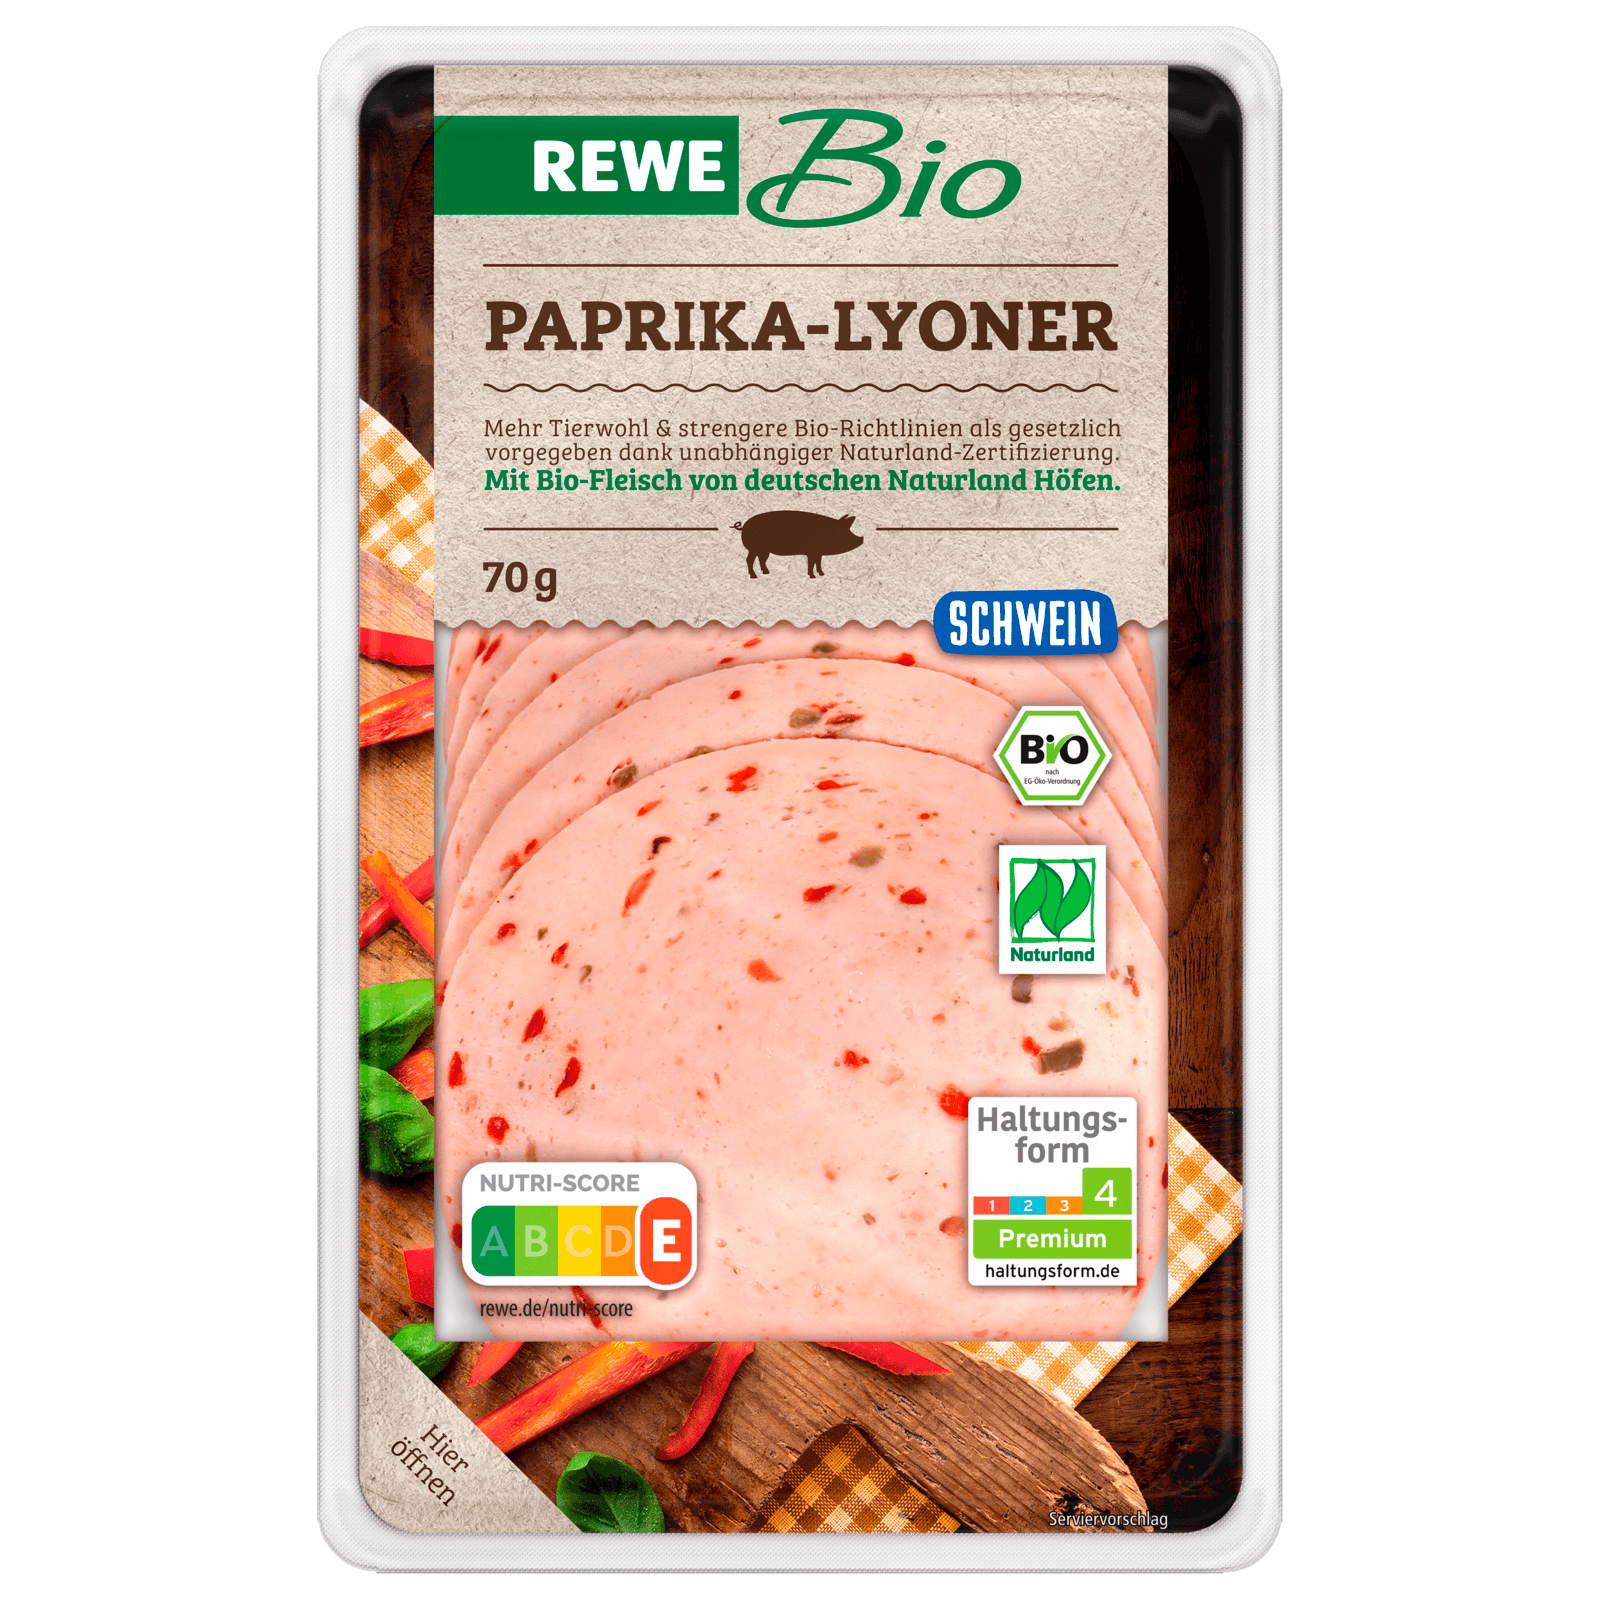 REWE Bio Paprika-Lyoner 70g